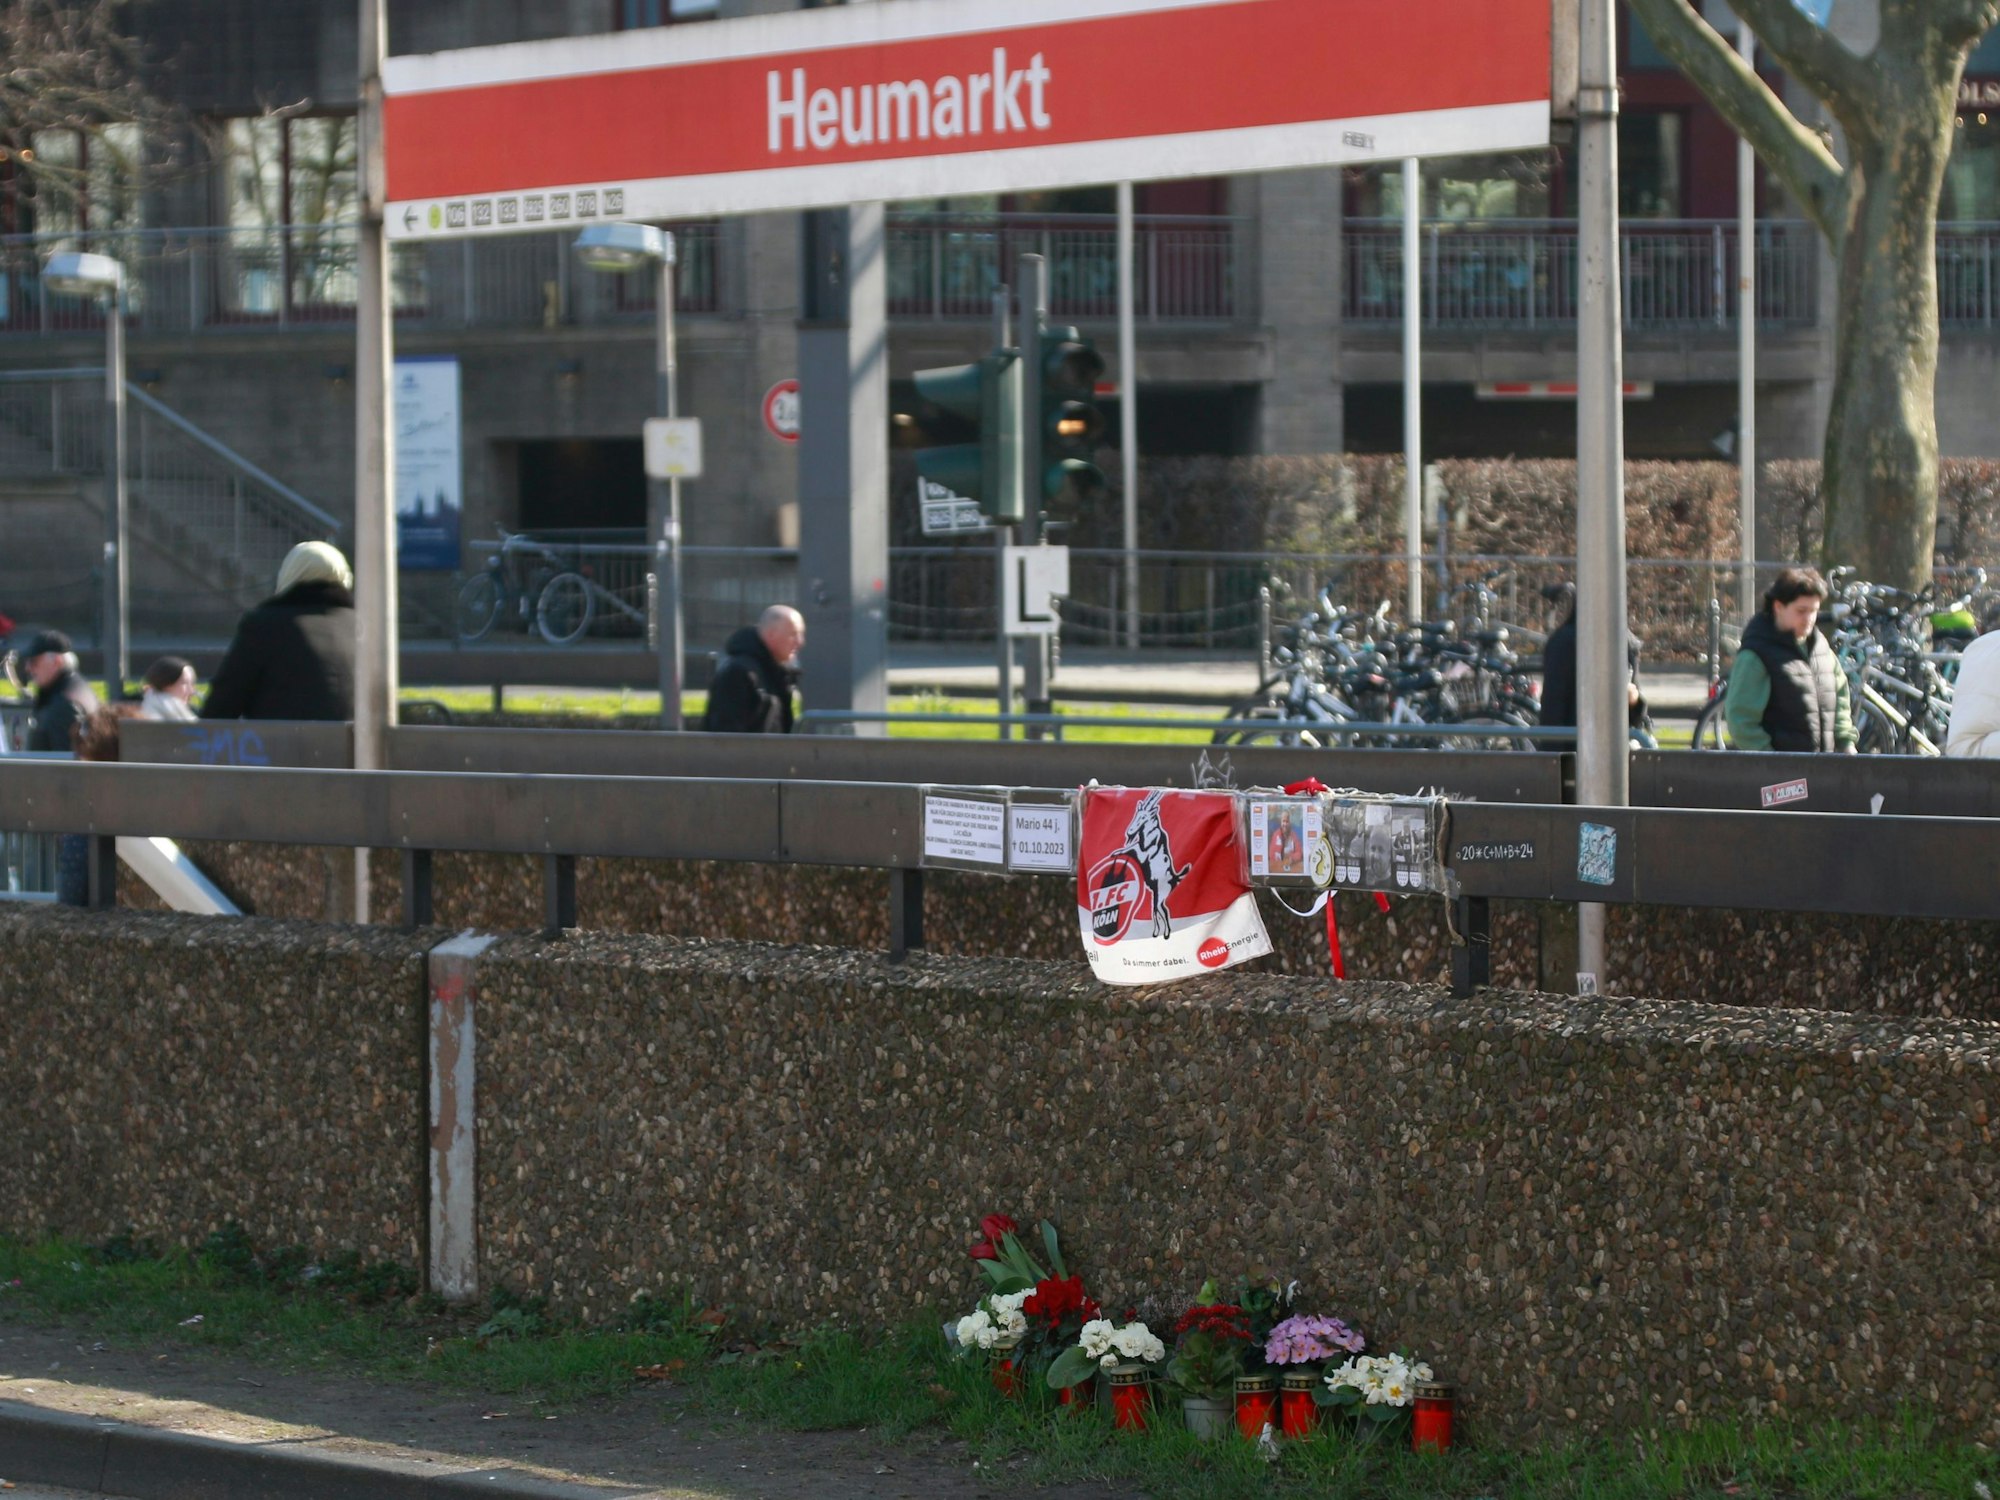 An einem Gelände hängt eine Fahne des 1. FC Köln, darunter stehen Blumen und Kerzen.